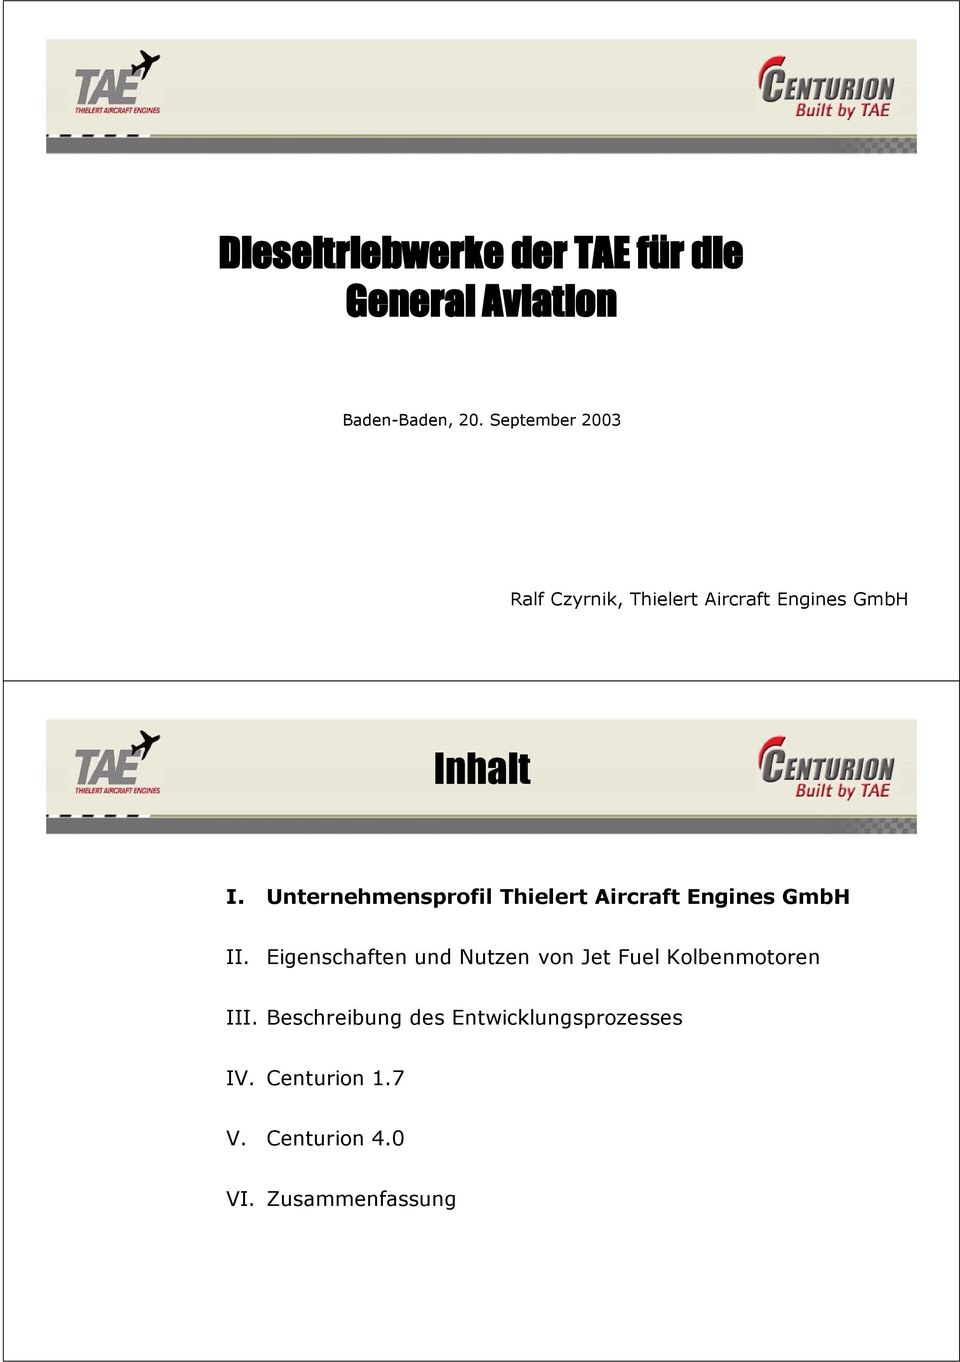 Unternehmensprofil Thielert Aircraft Engines GmbH II.